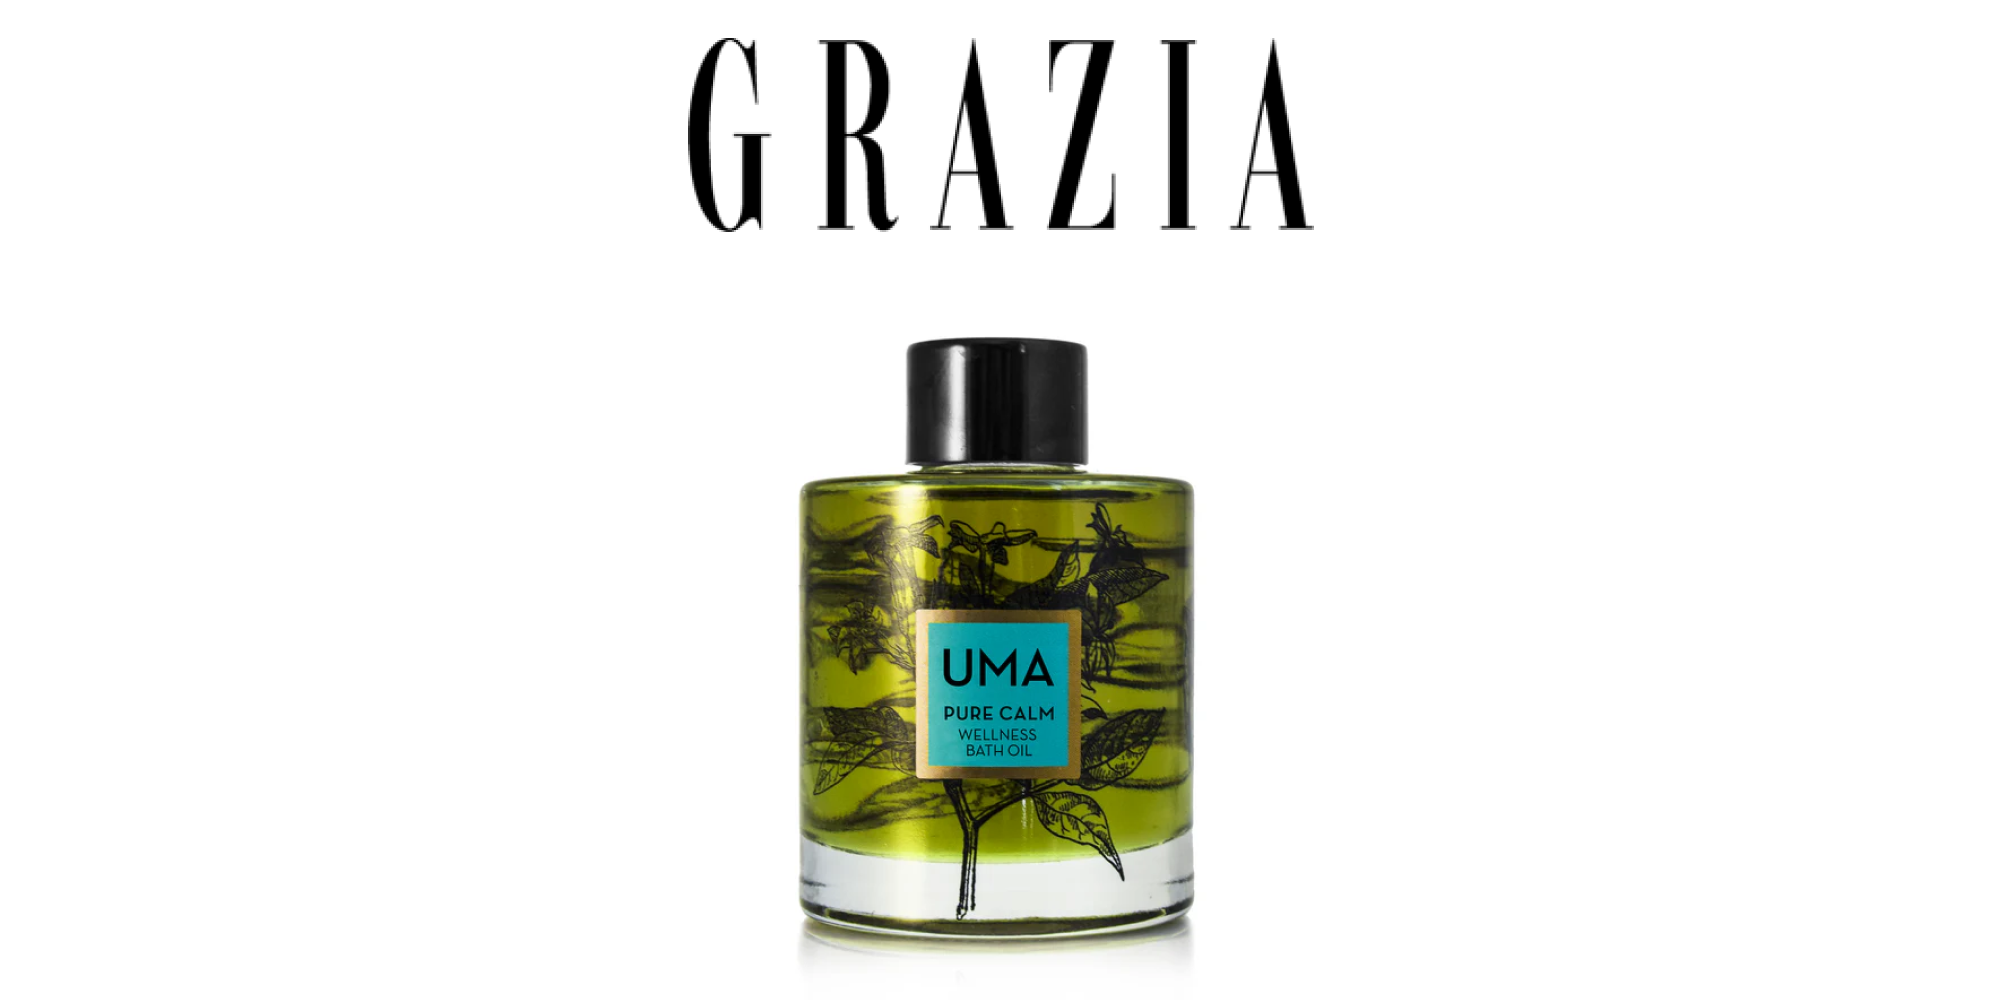 Grazia: Beauty Odyssey